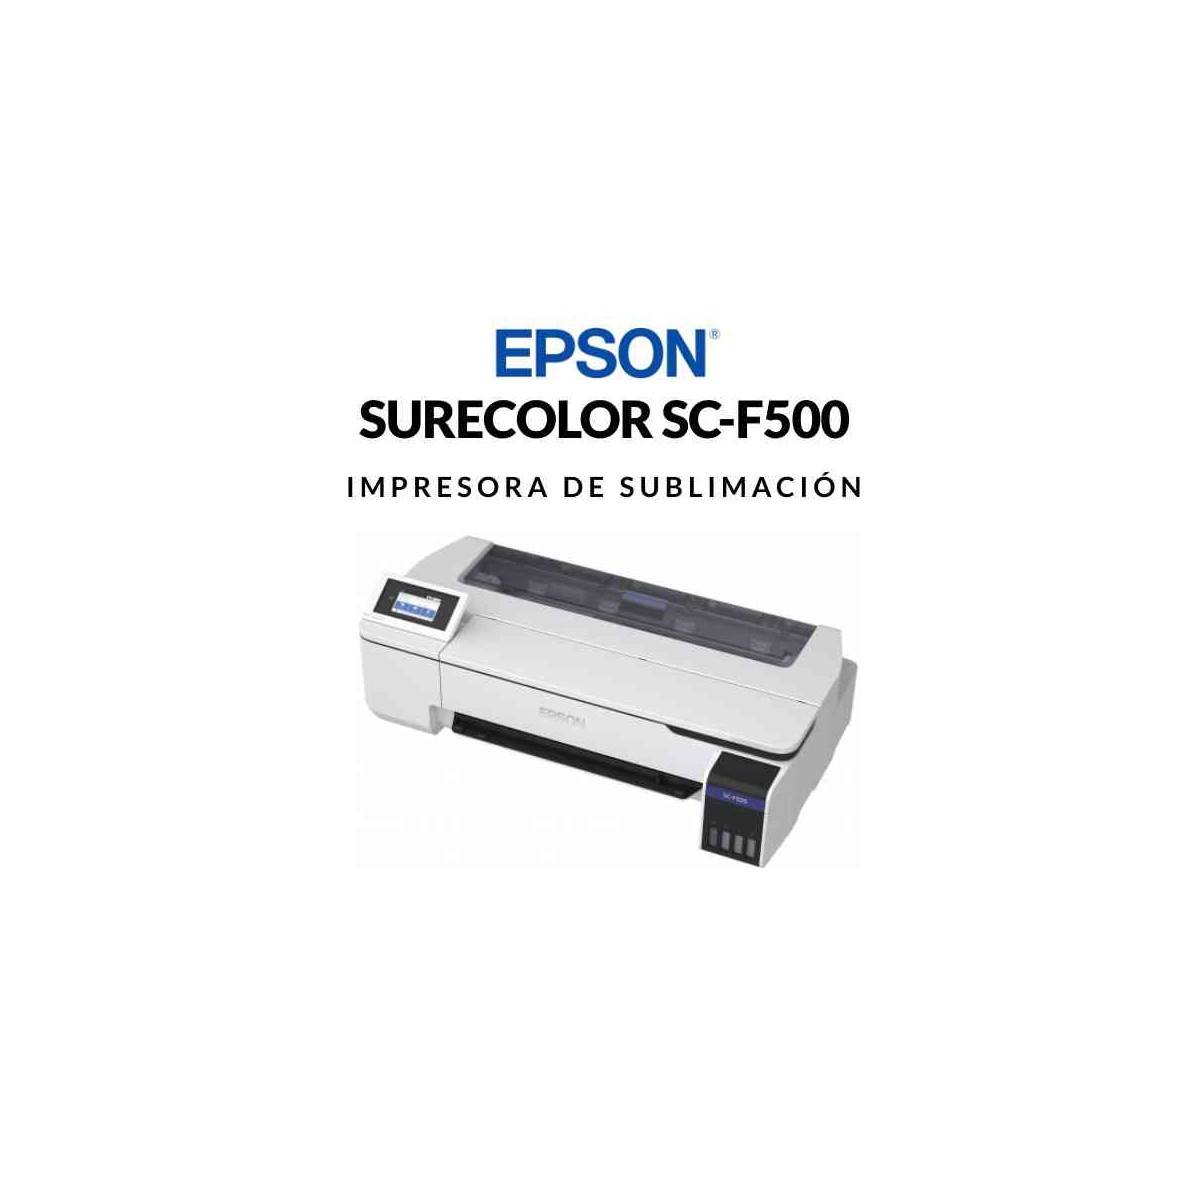 Impresora sublimación Epson SureColor F500. CONSULTAR DISPONIVILIDAD